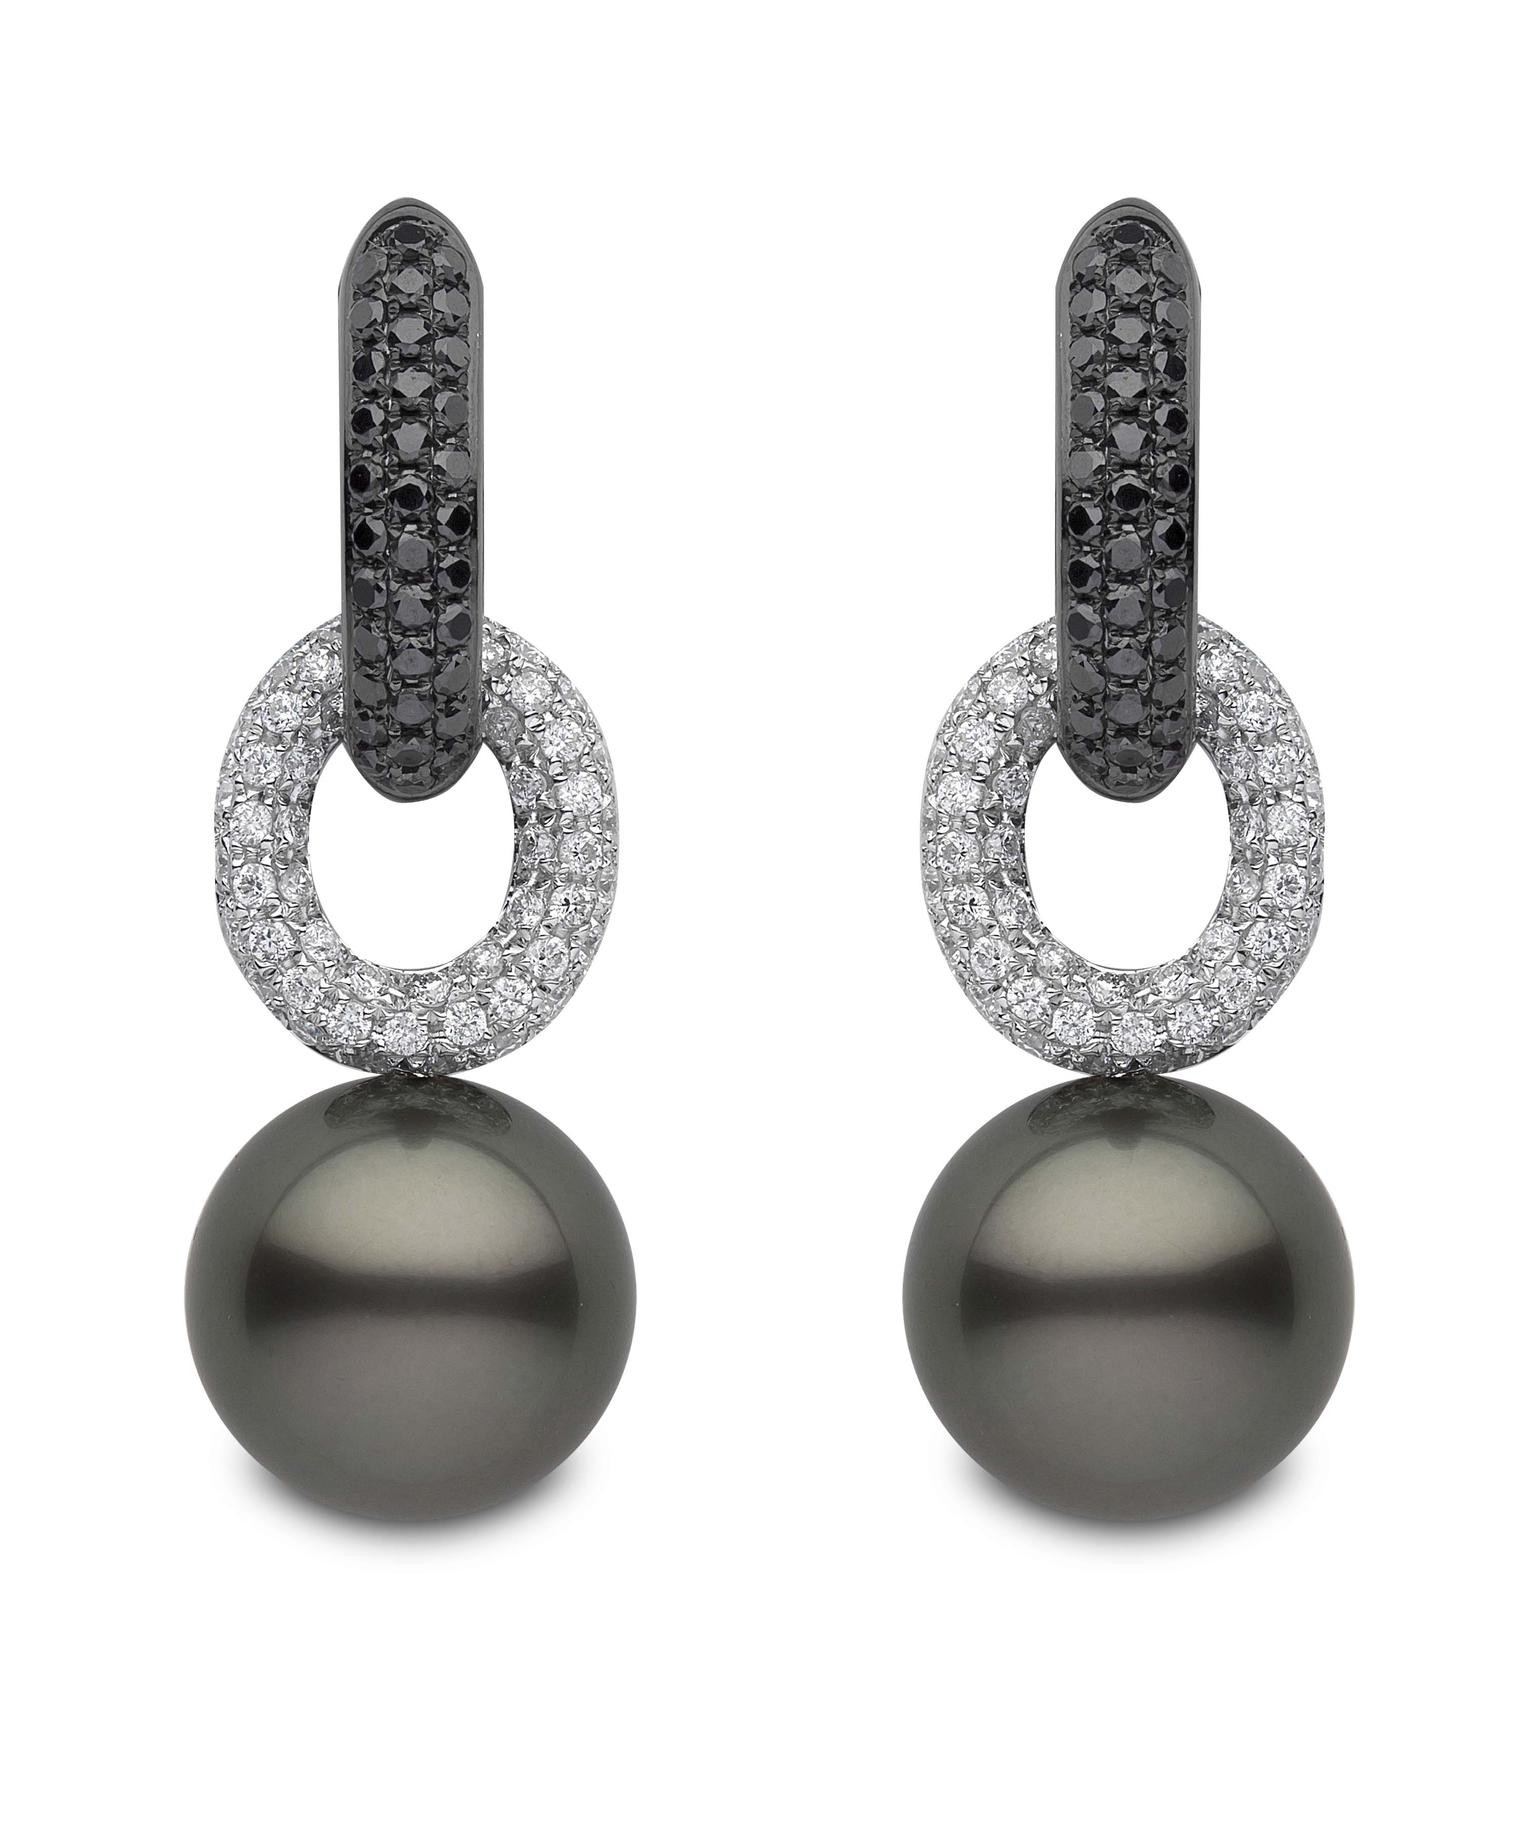 Yoko London Tahitian pearl earrings with black and white diamonds (£POA).